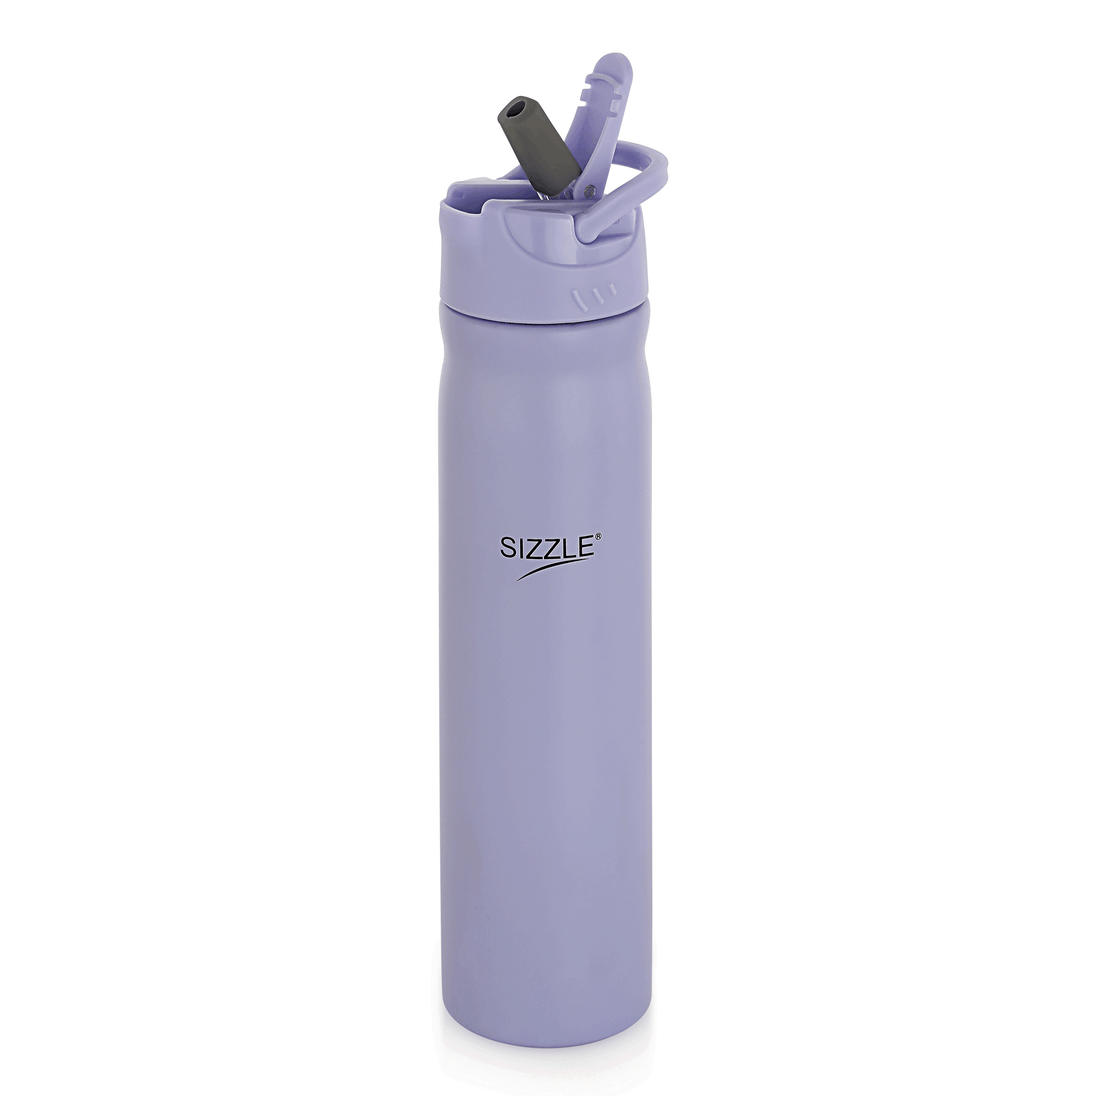 Bliss Stainless Steel Water Bottle - 750ml - Single Wall